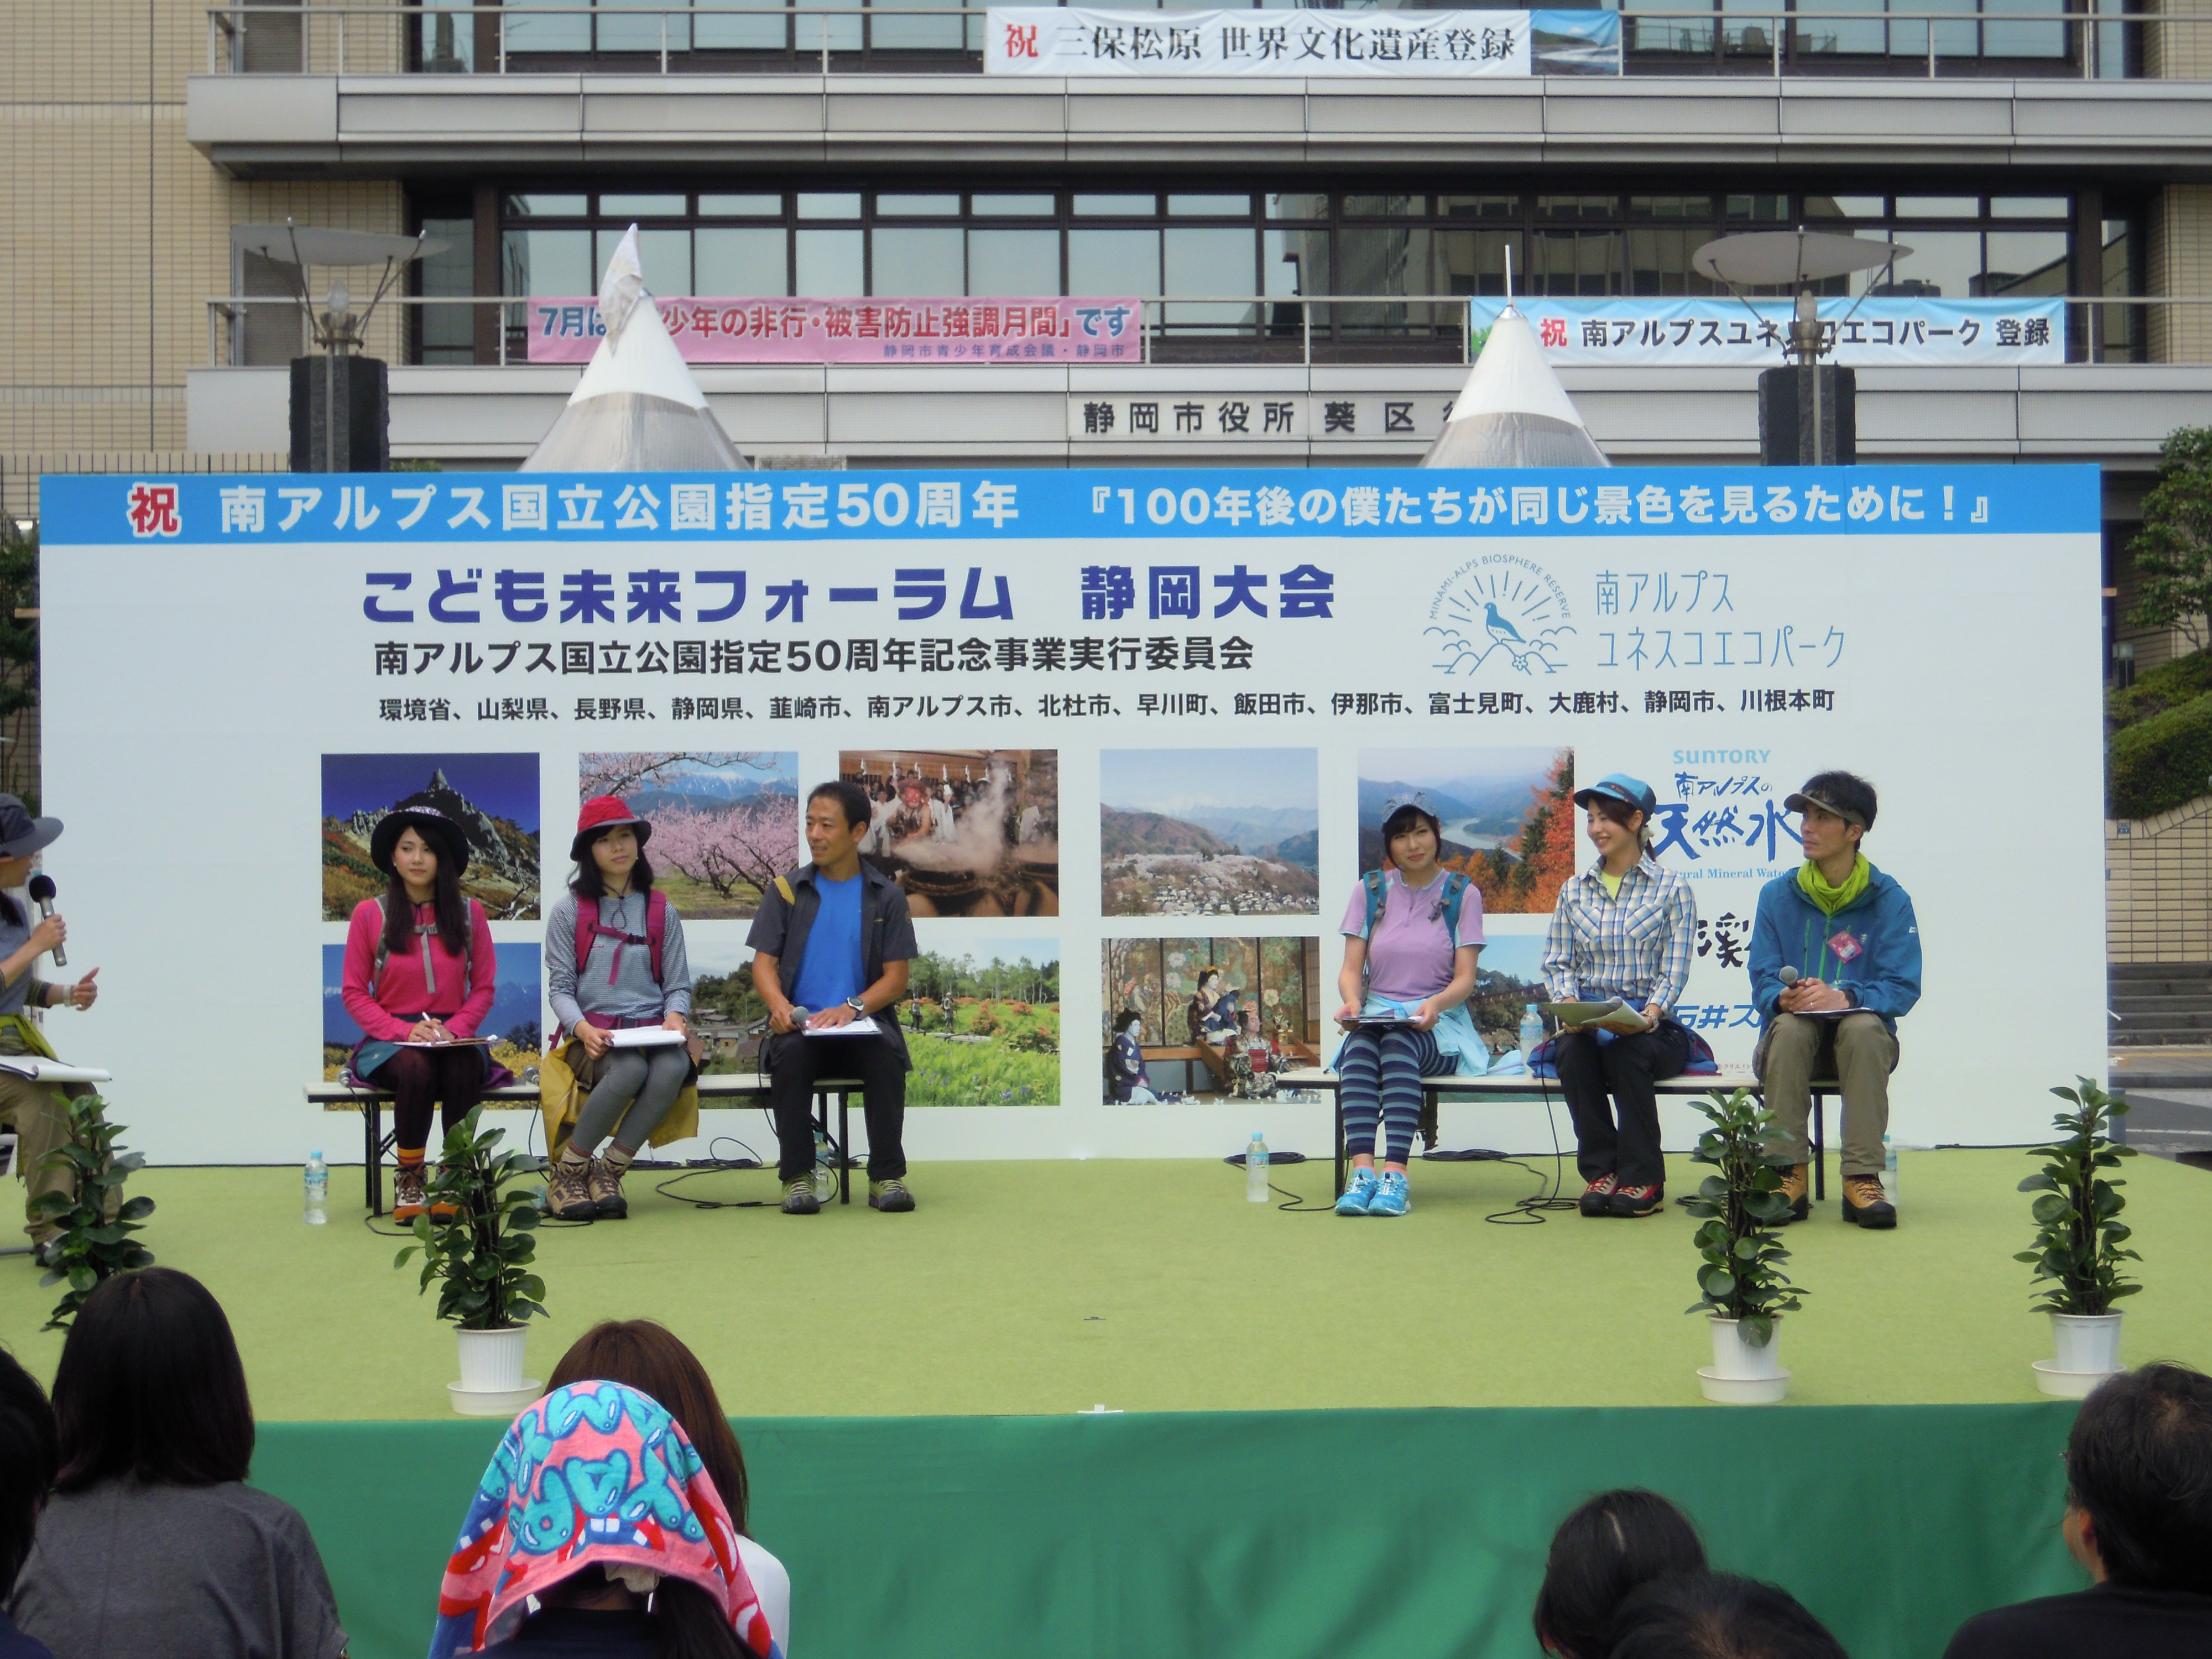 http://www.shizutan.jp/news/2014/07/29/images/DSCN0818.JPG